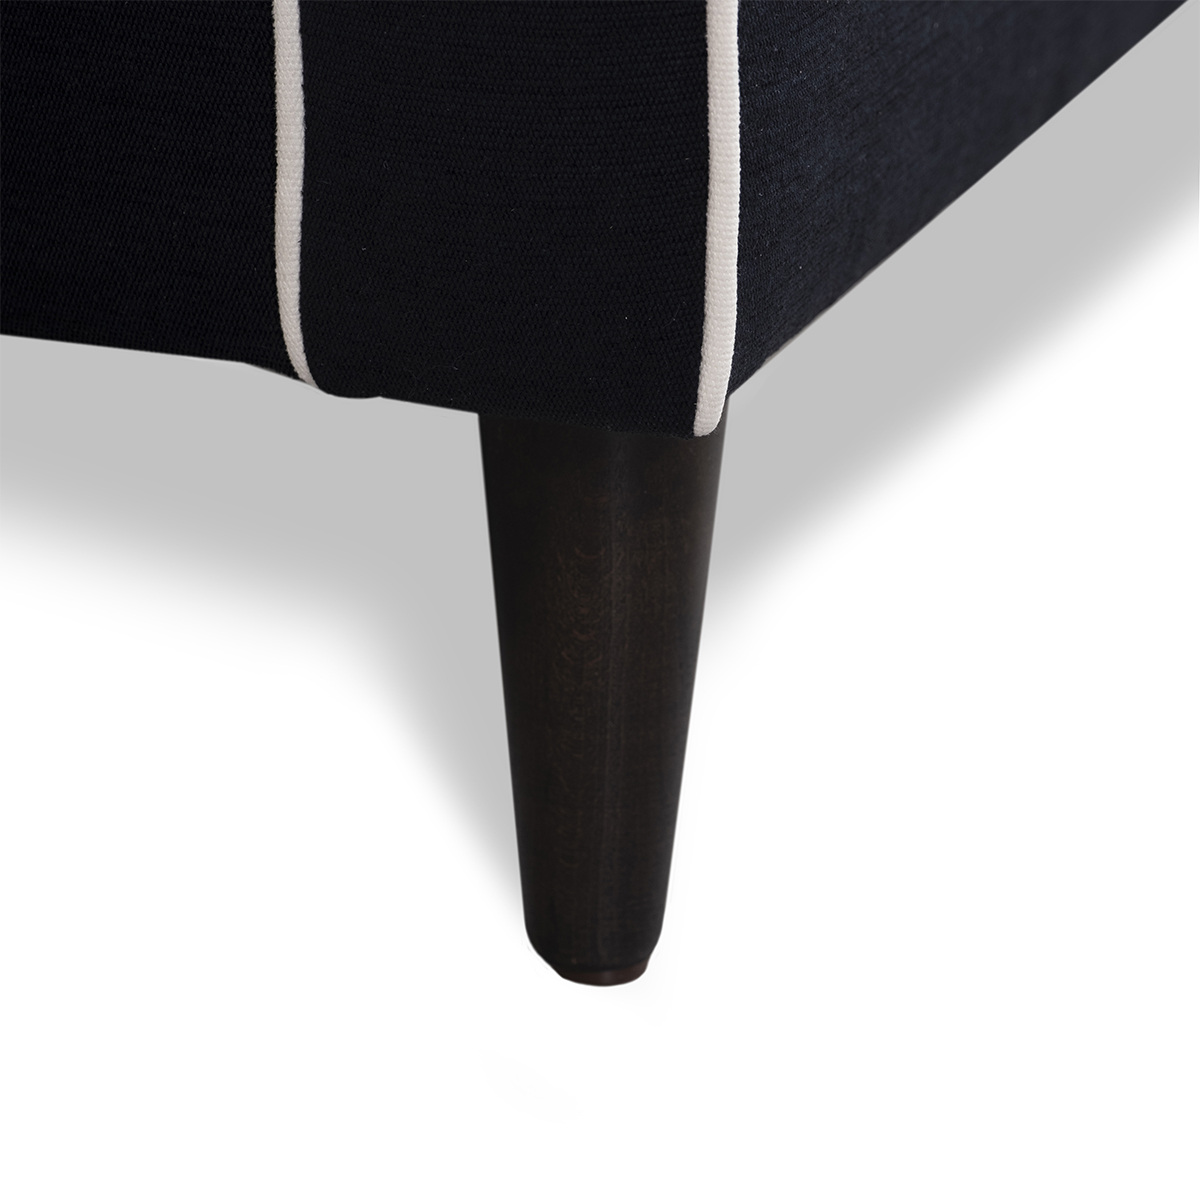 Armchair Noa, Black / White - H77x W90 x D90 cm - Cotton / Wood - image 6